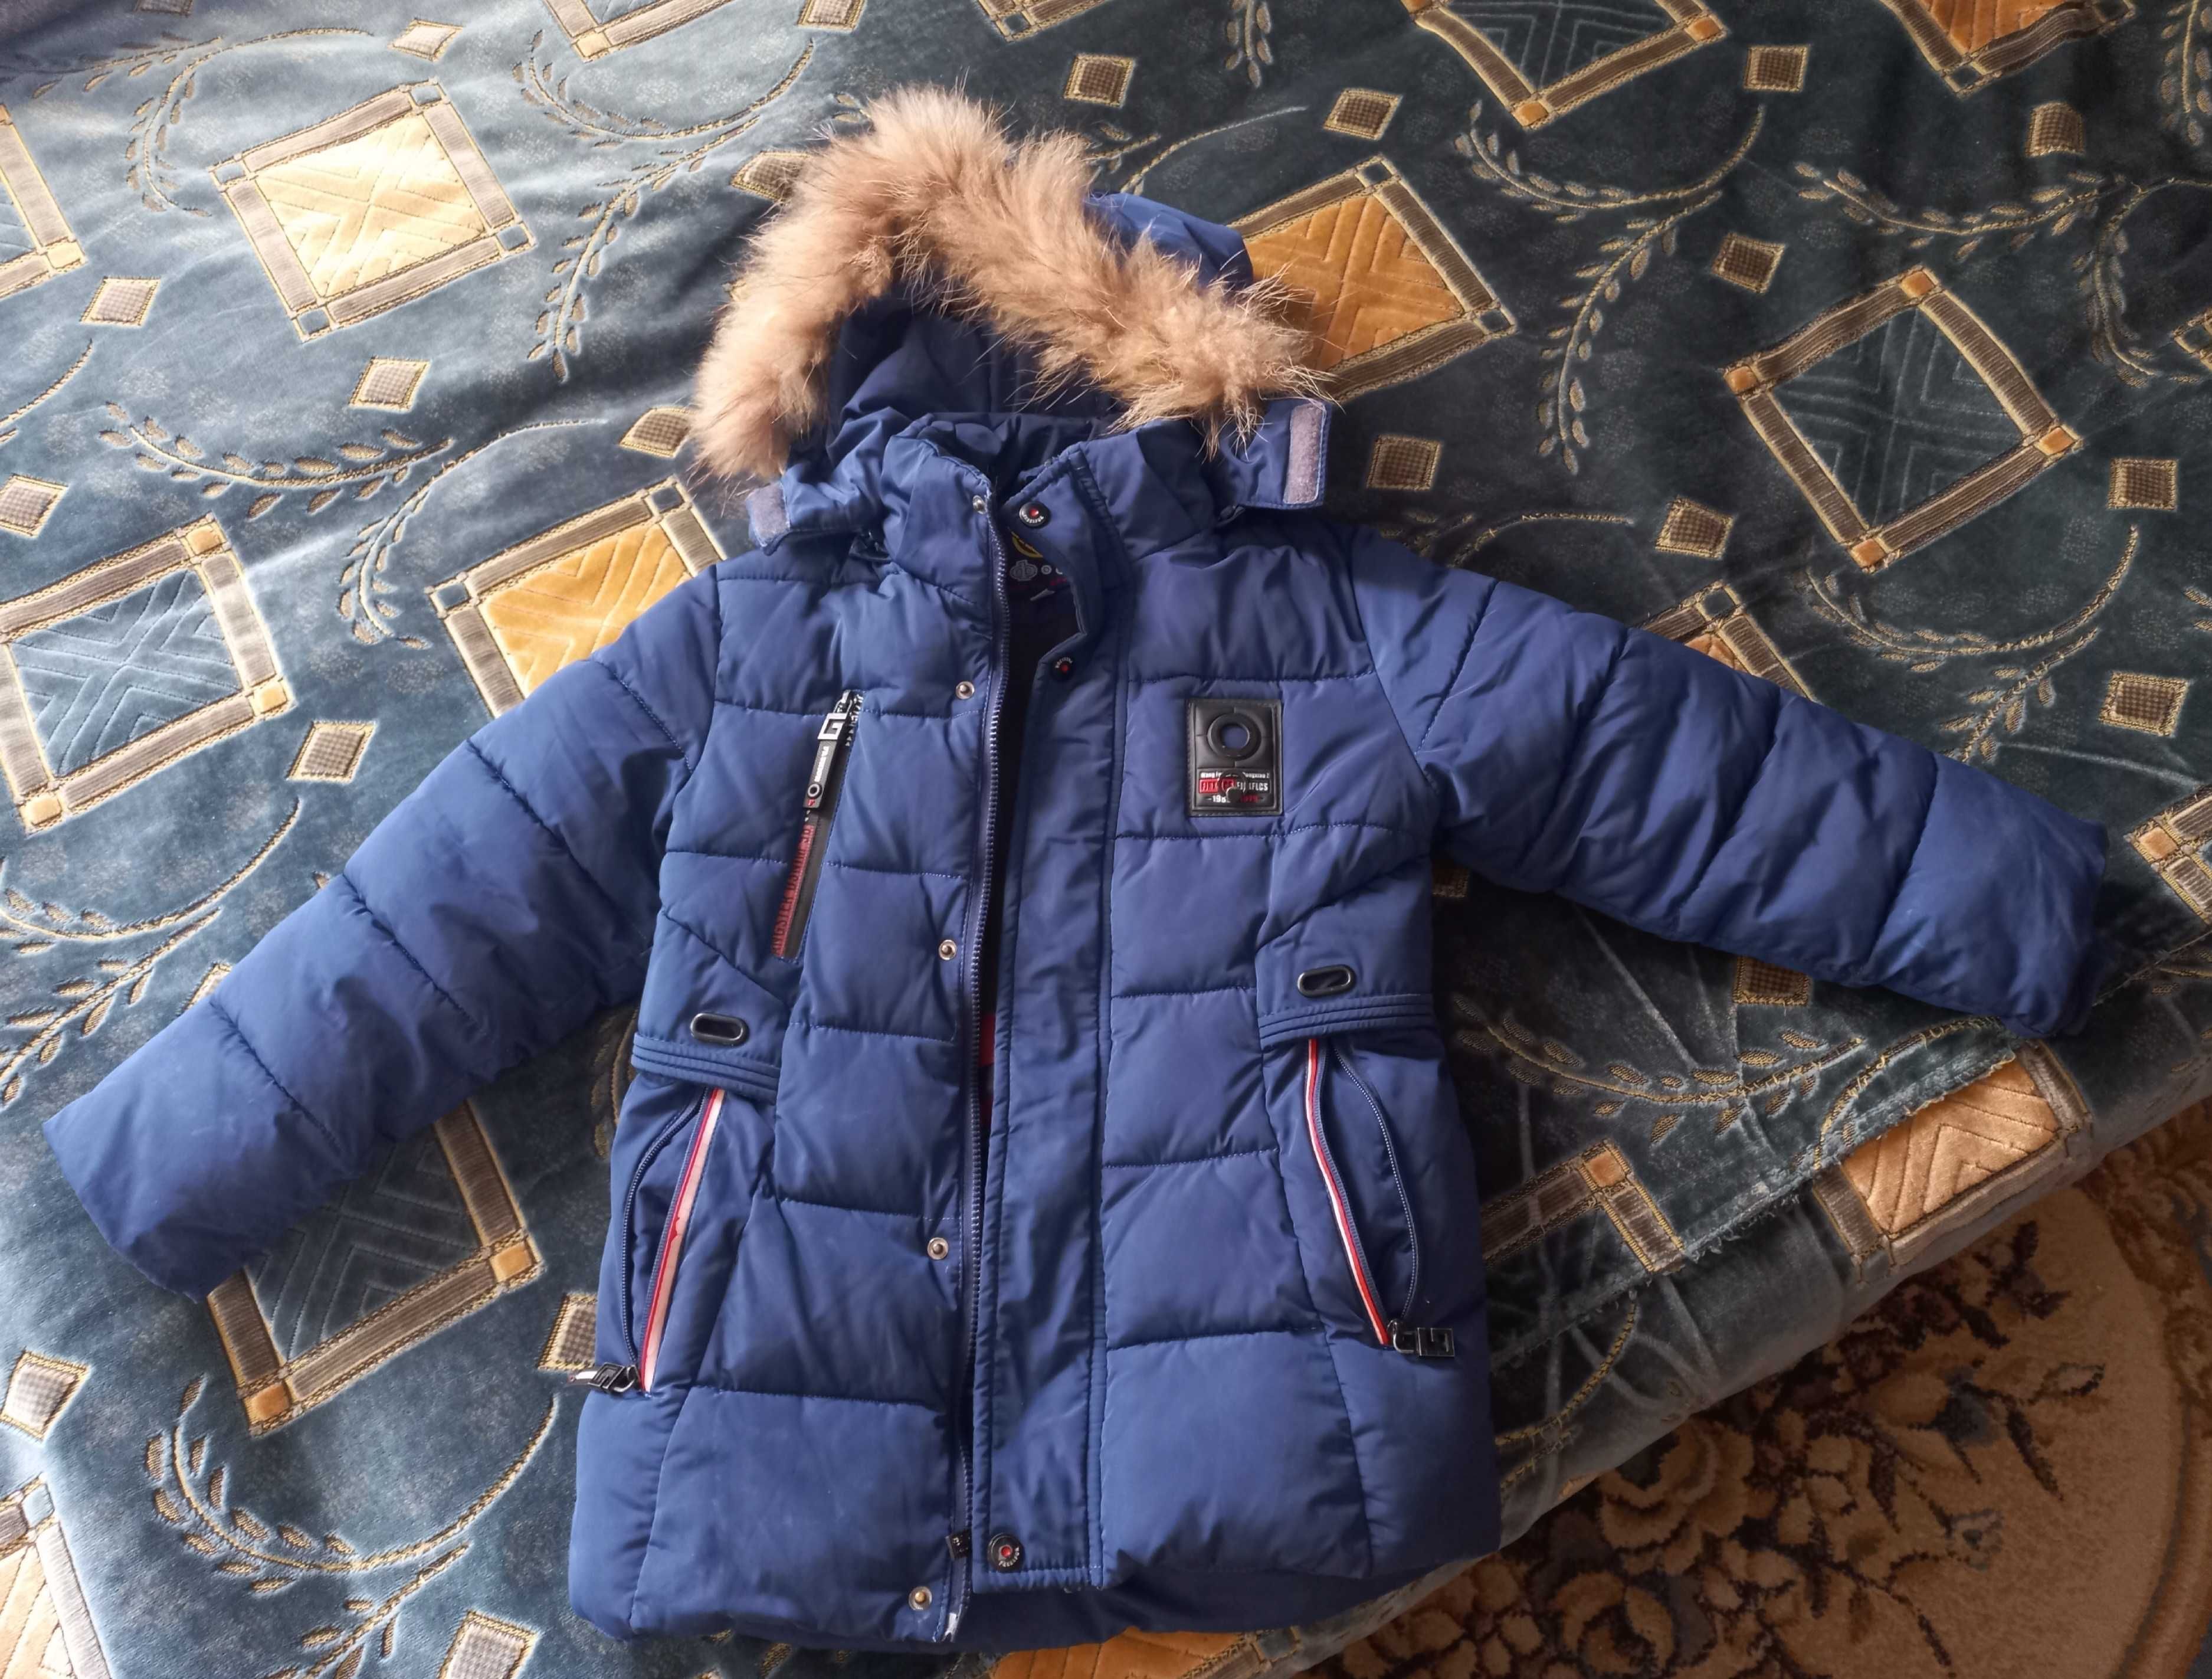 Продам куртку на мальчика 6-8 лет зимнюю